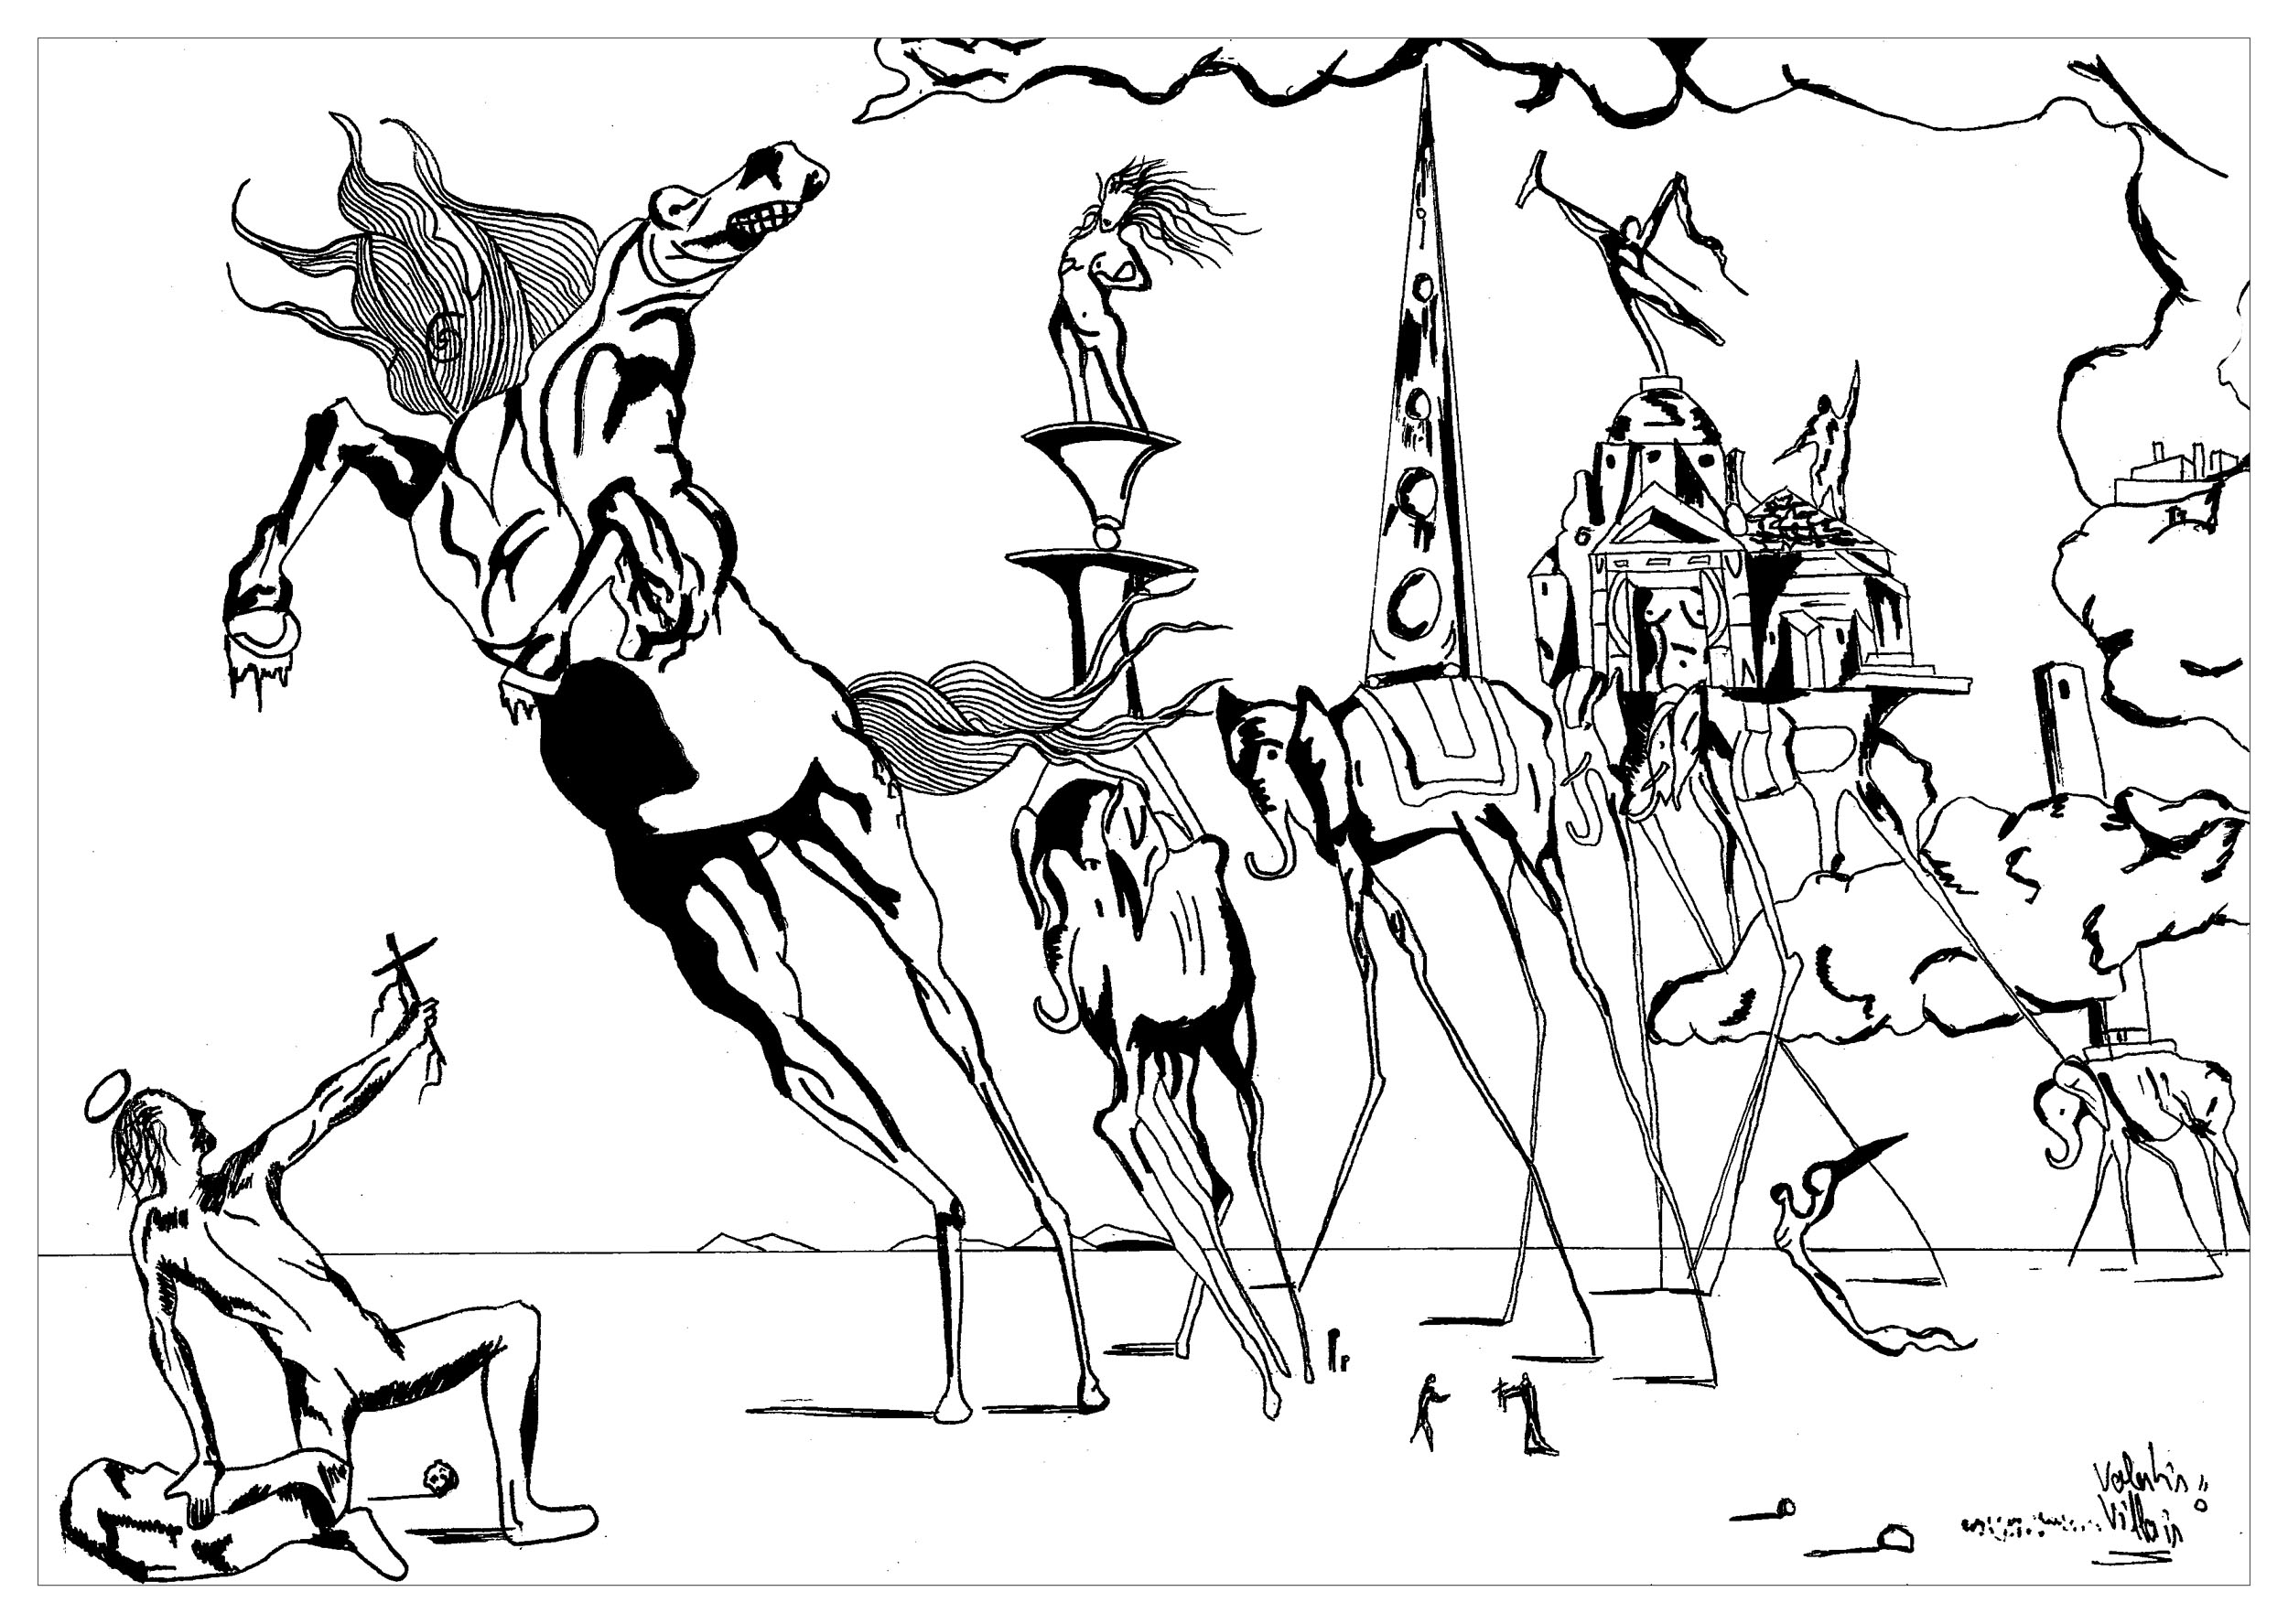 Página para colorear inspirada en el cuadro La tentación de San Antonio de Salvador Dalí